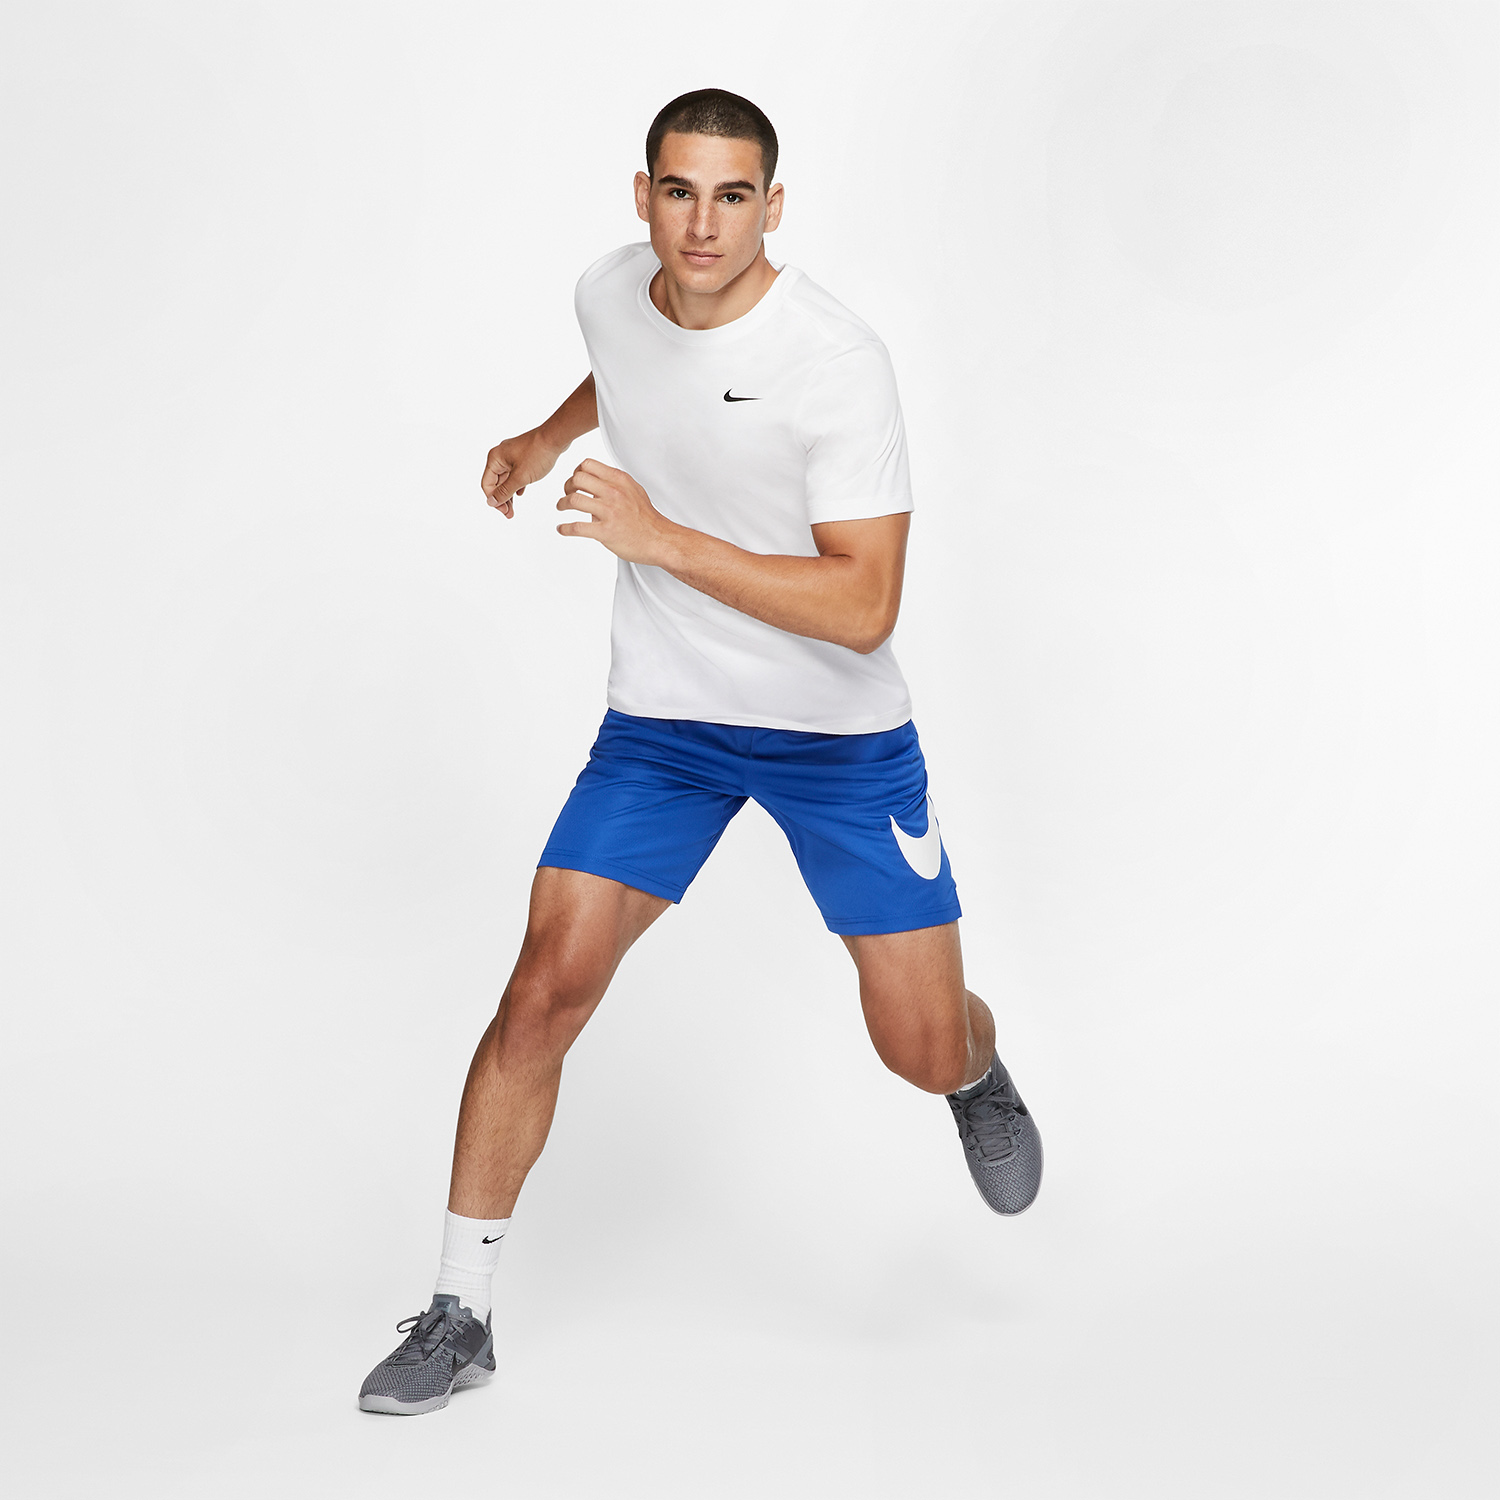 Nike Dri-FIT Swoosh Logo Men's Training T-Shirt - White/Black